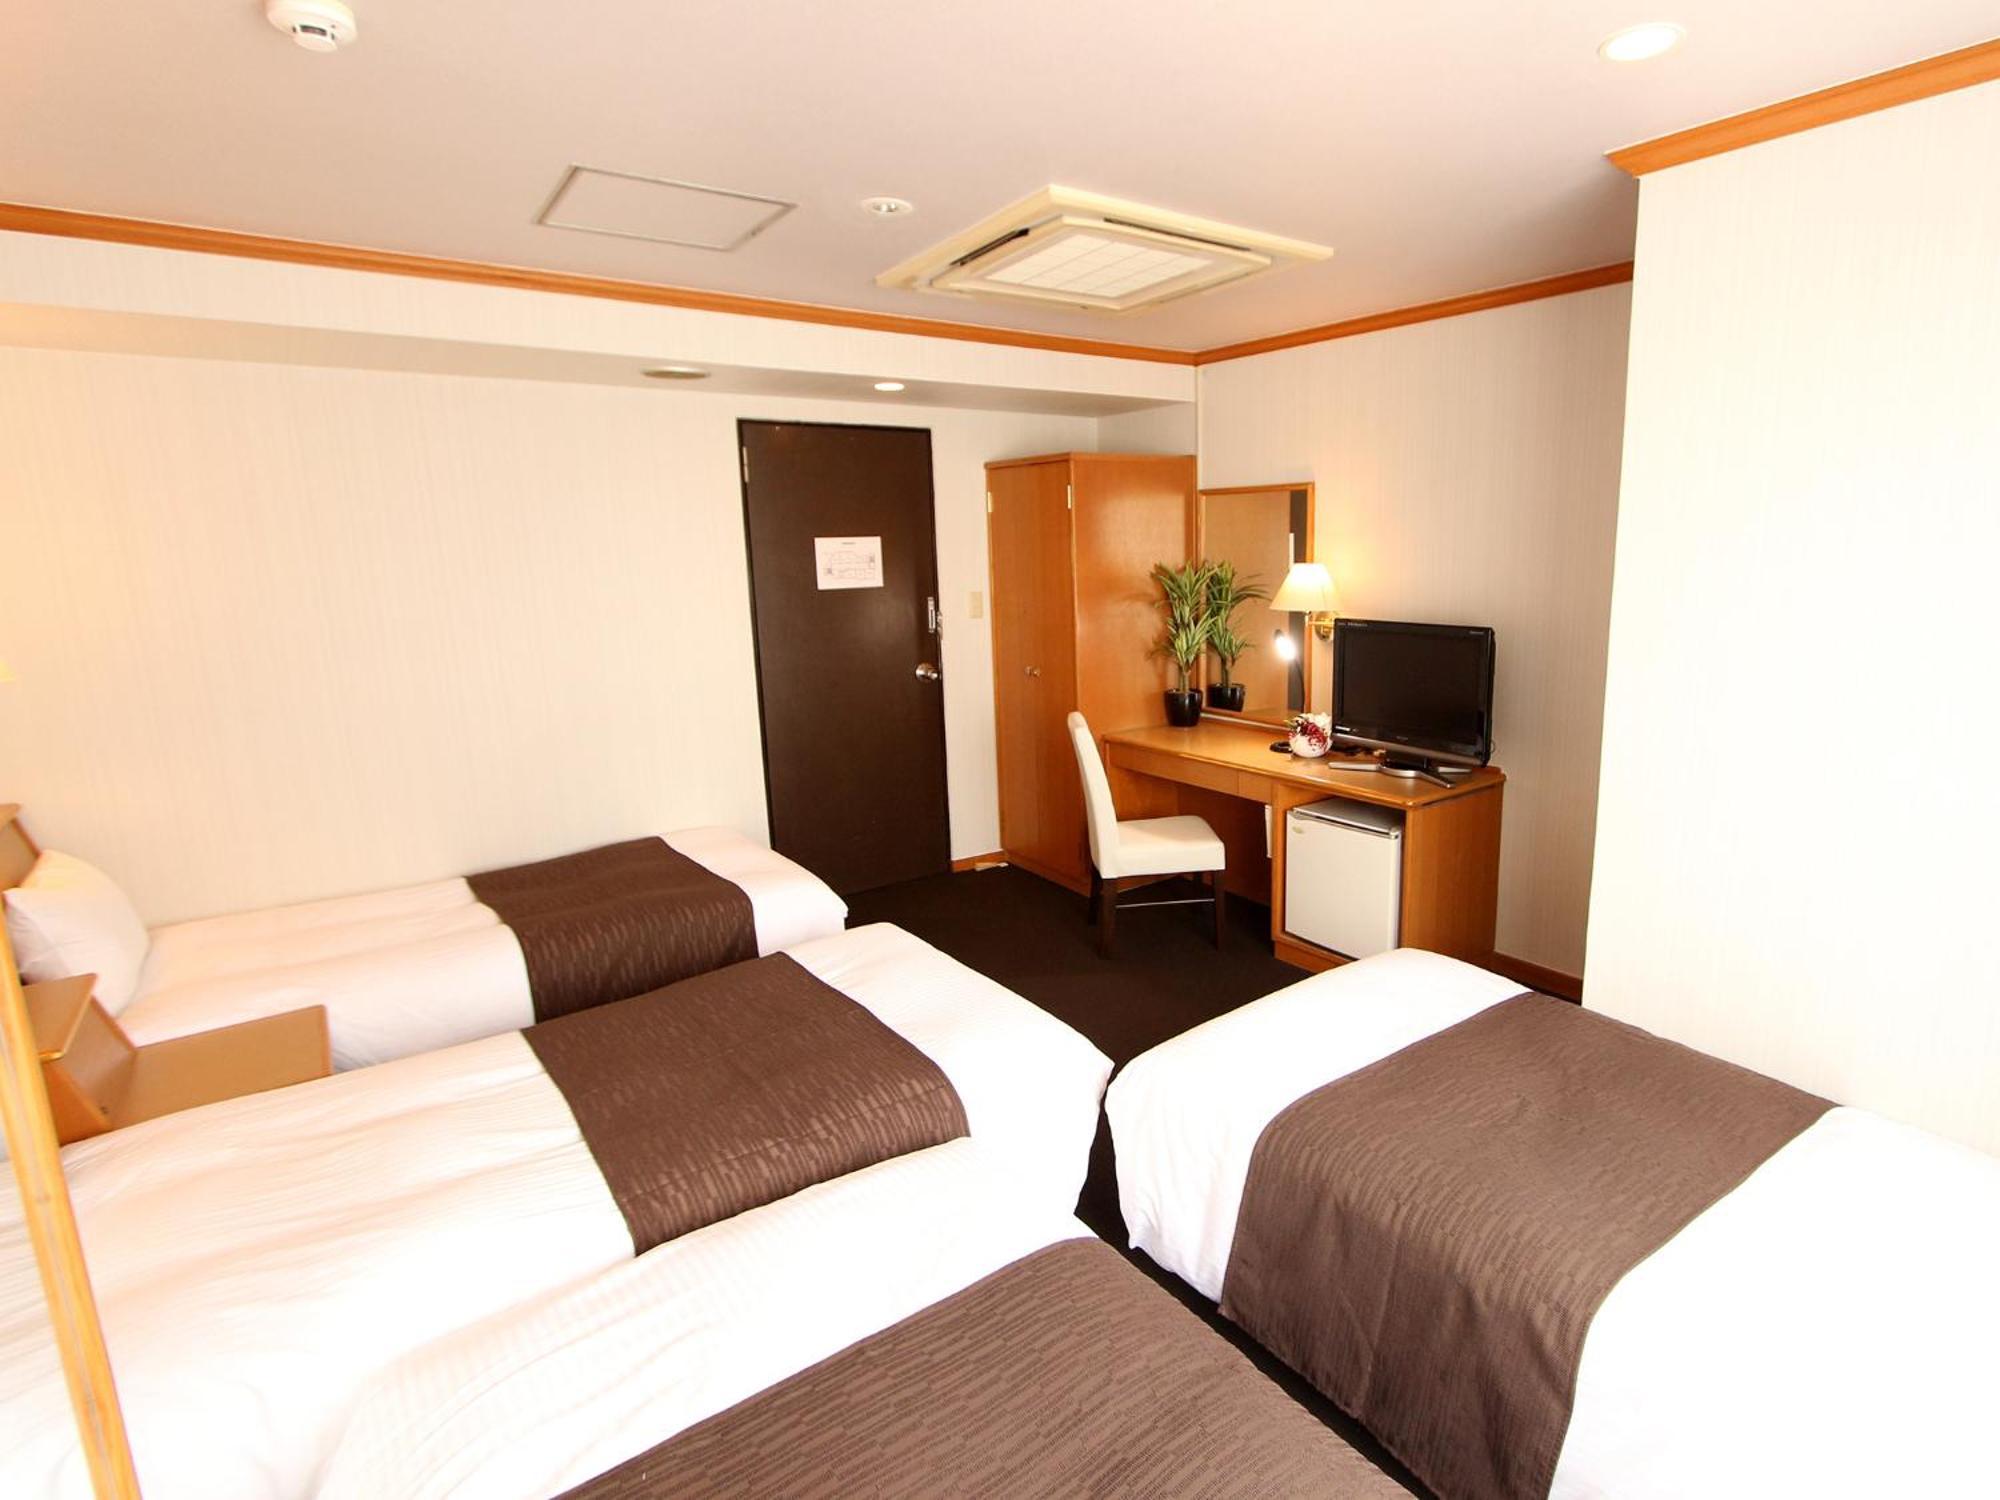 HOTEL LiVEMAX BUDGET Okinawa Tomariko Naha Værelse billede